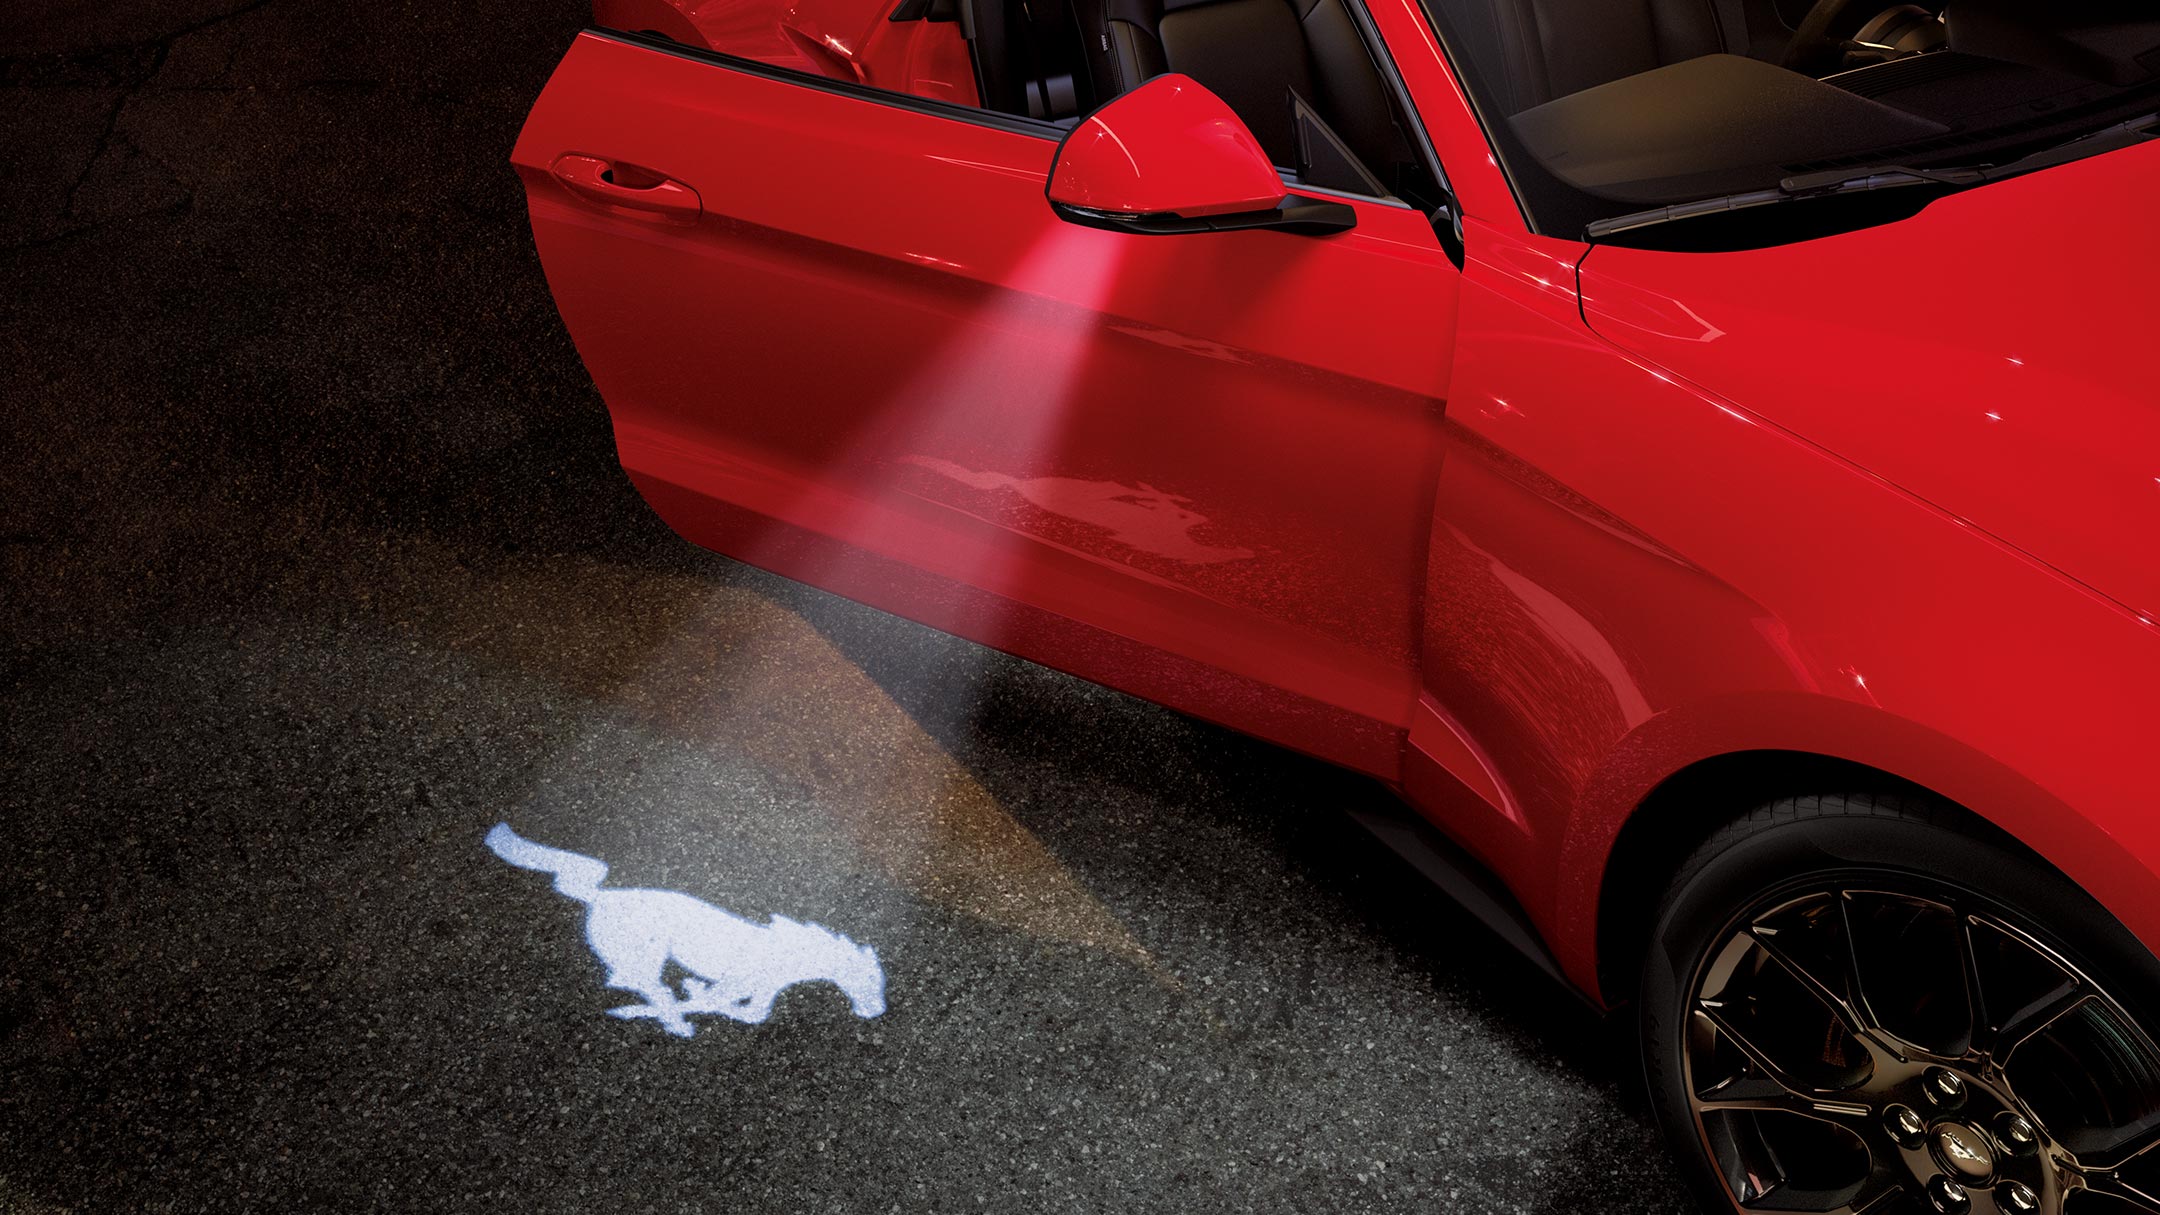 Ford Mustang in Rot. Dreiviertelansicht, parkend mit geöffneter Tür und Mustang-Pony-Form-Lichtkegel